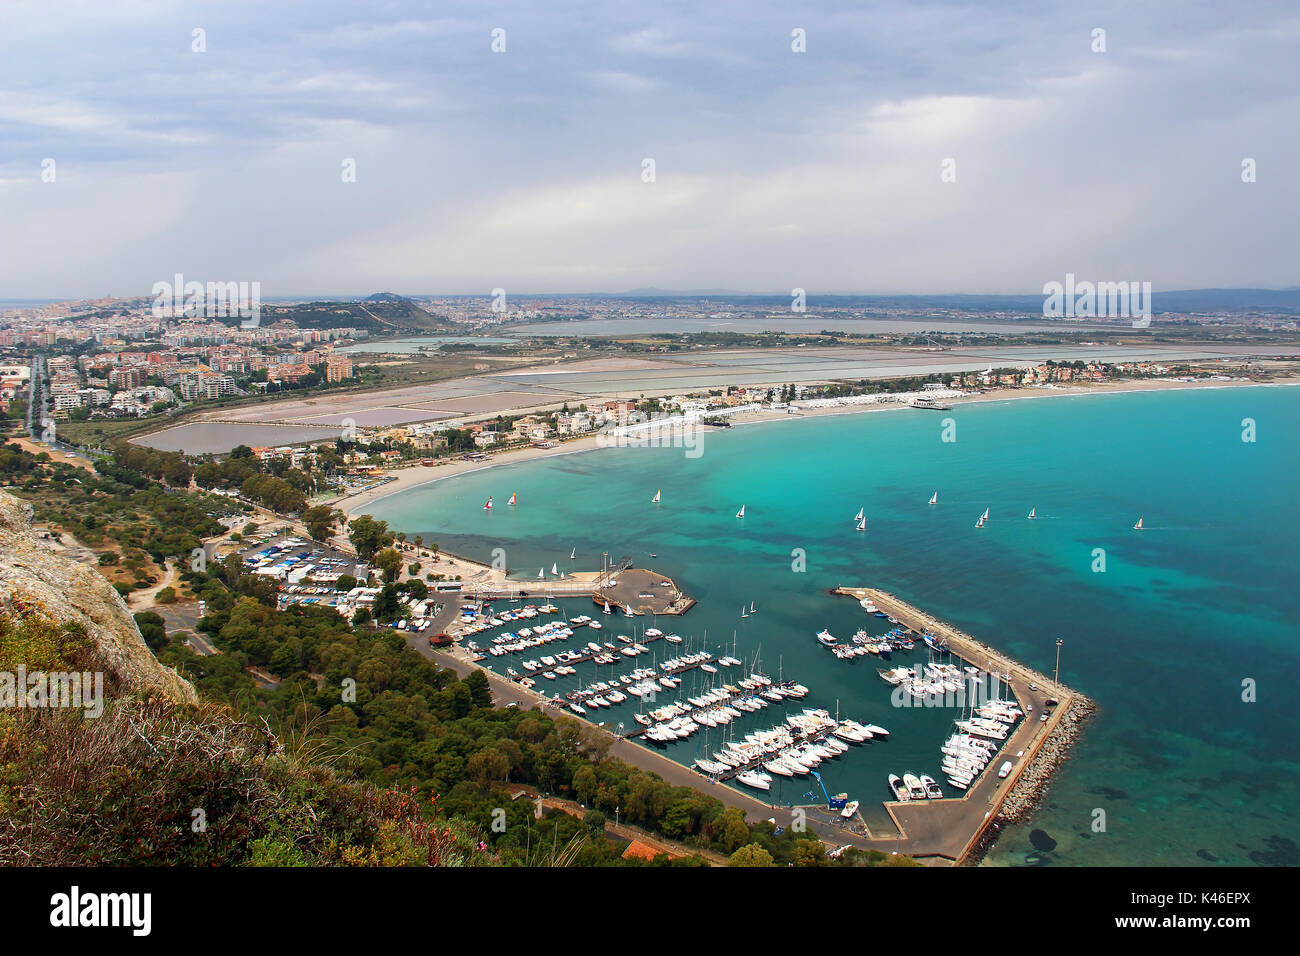 Vue aérienne de la plage de Poetto et le port de Marina Piccola, Cagliari, Sardaigne, Italie Banque D'Images